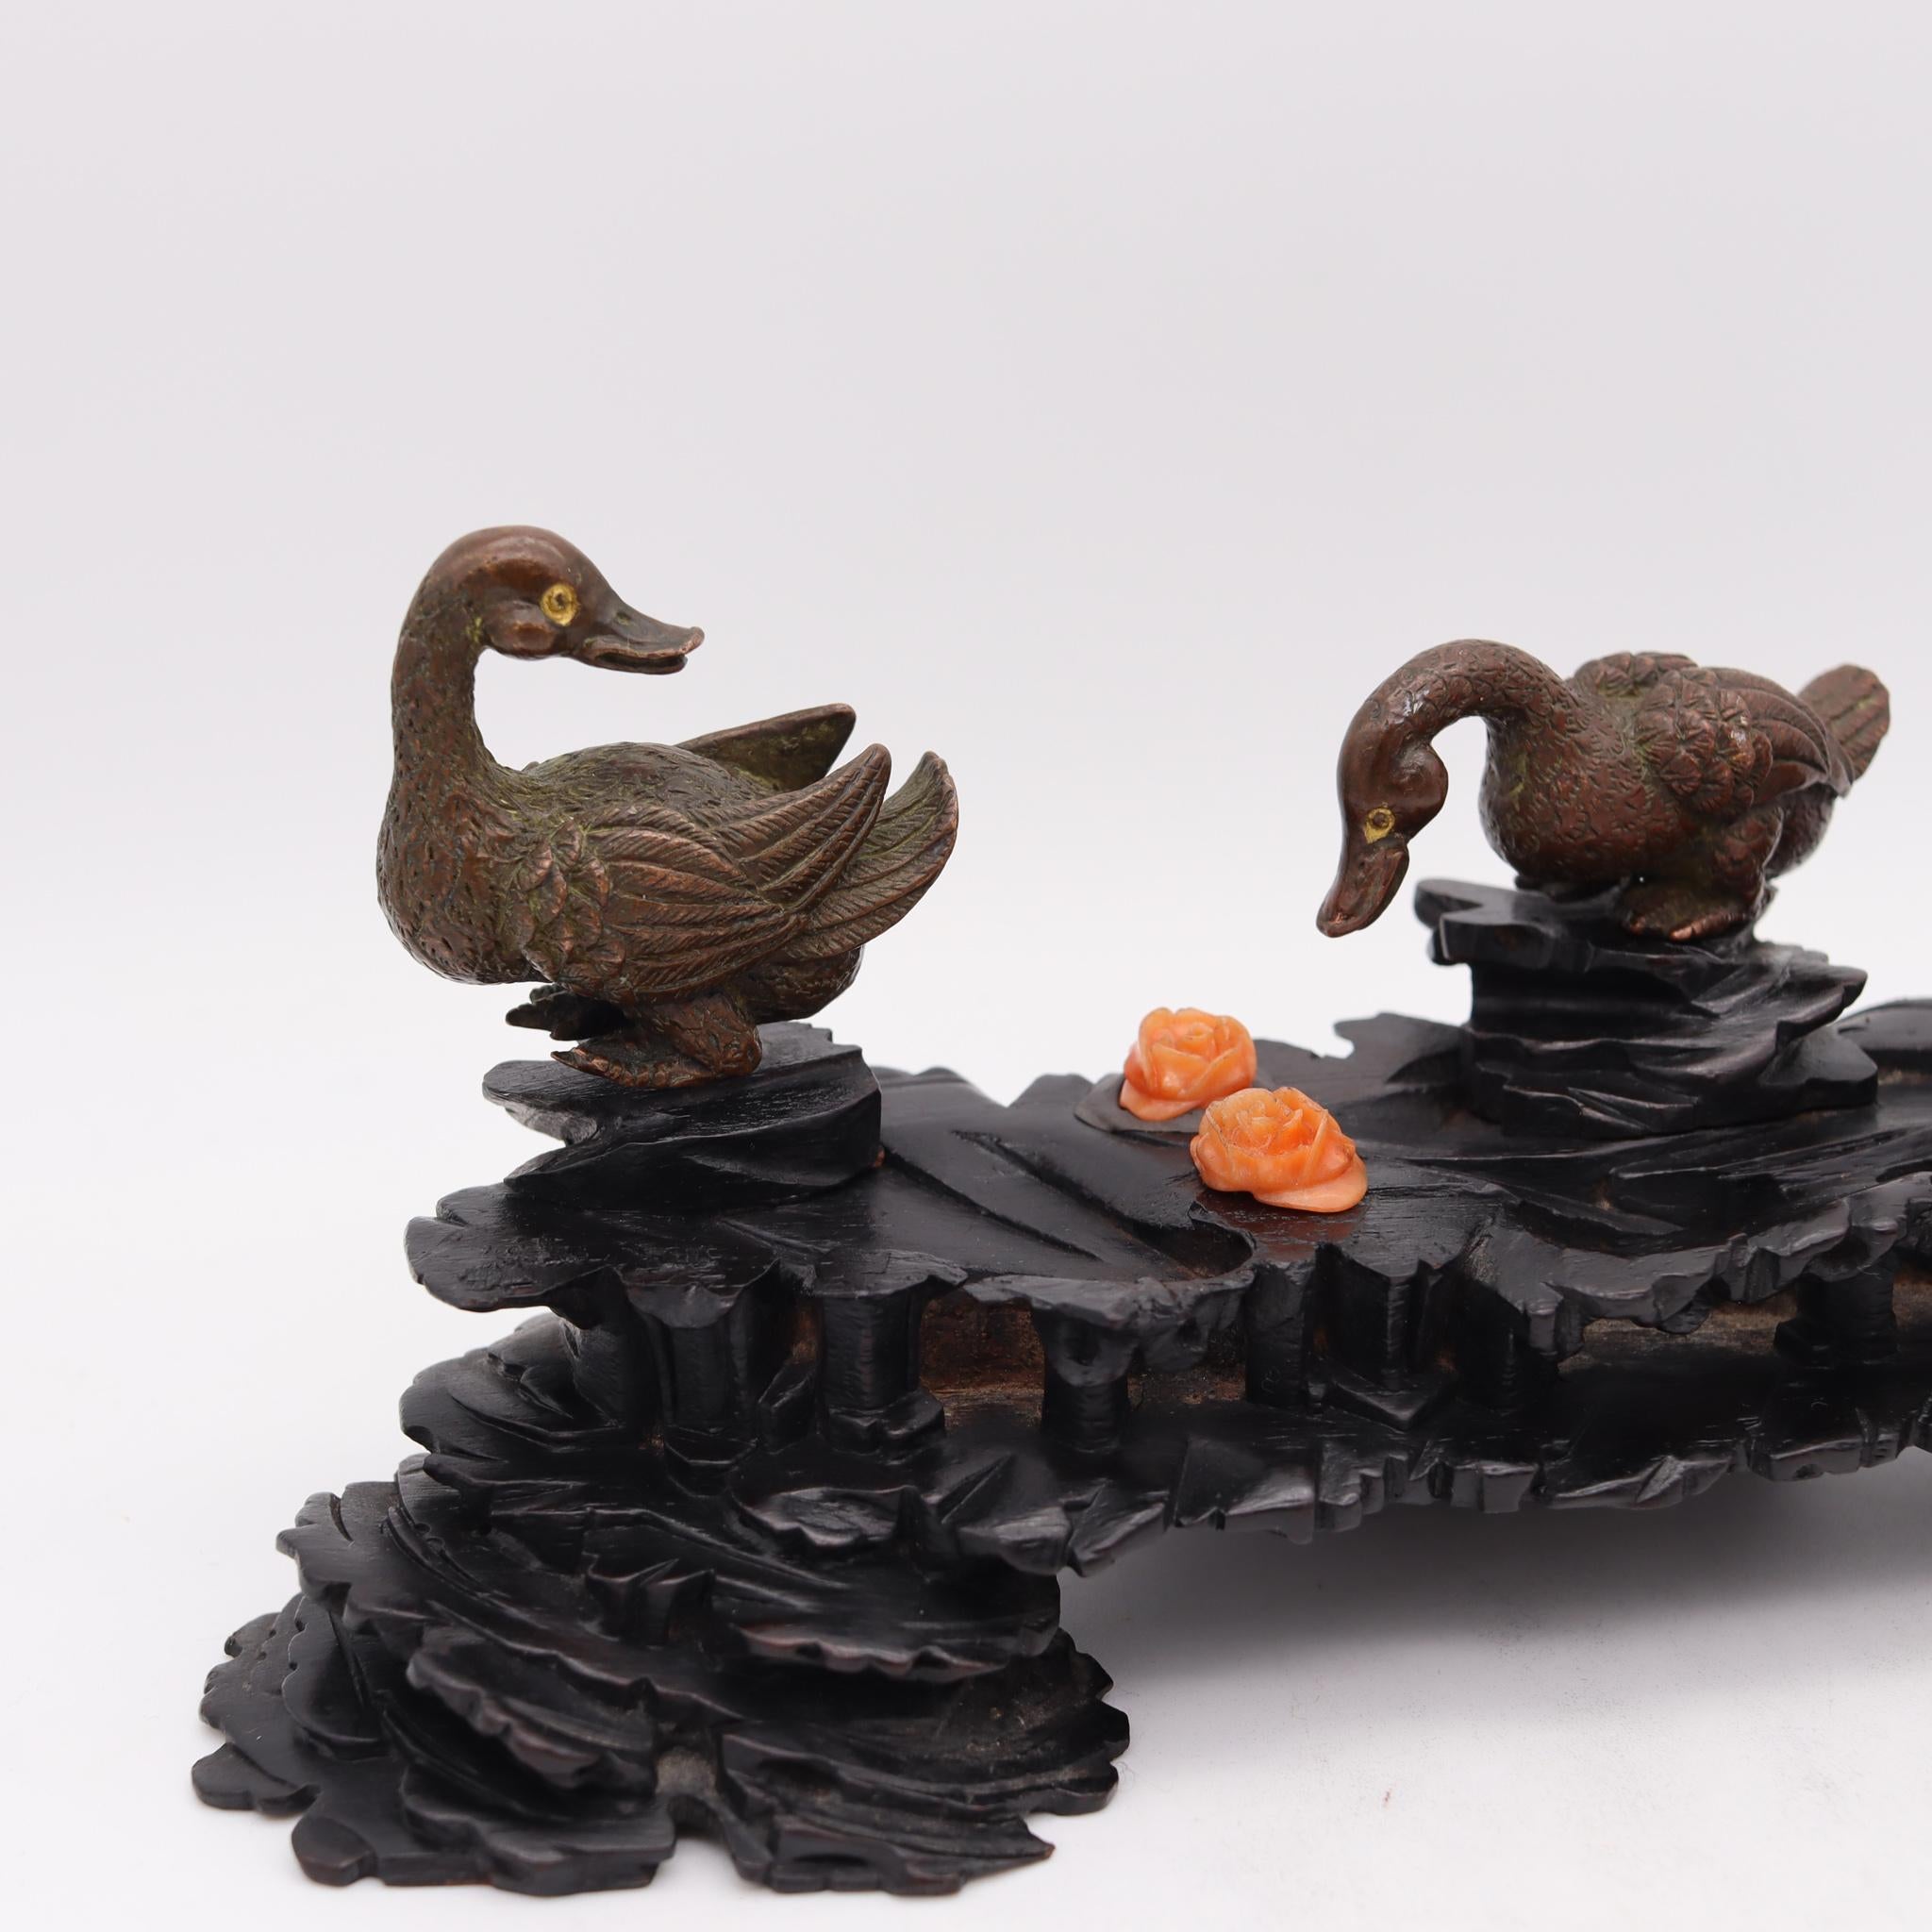 Skulpturale Komposition der Enten aus der japanischen Meiji-Zeit.

Schöne und sehr gut realisierte skulpturale Komposition von drei Enten, die während der japanischen Kaiserzeit der Meiji, zurück in die 1900. Dieses Stück besteht aus drei stehenden